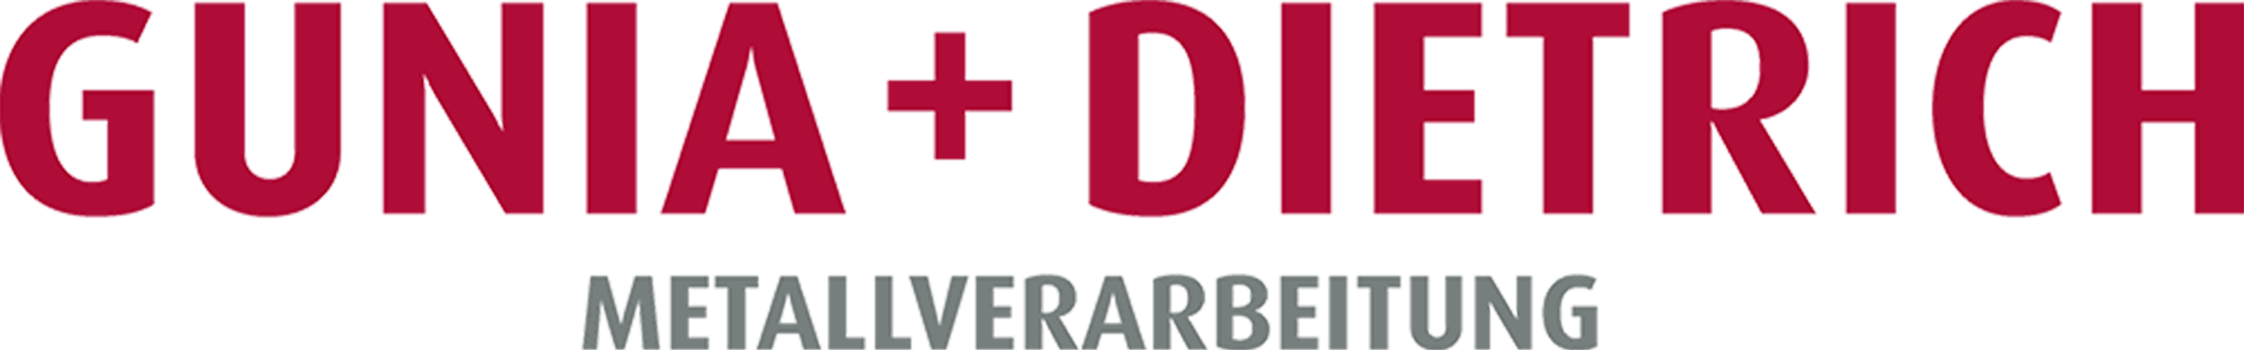 Gunia + Dietrich Metallverarbeitung Logo